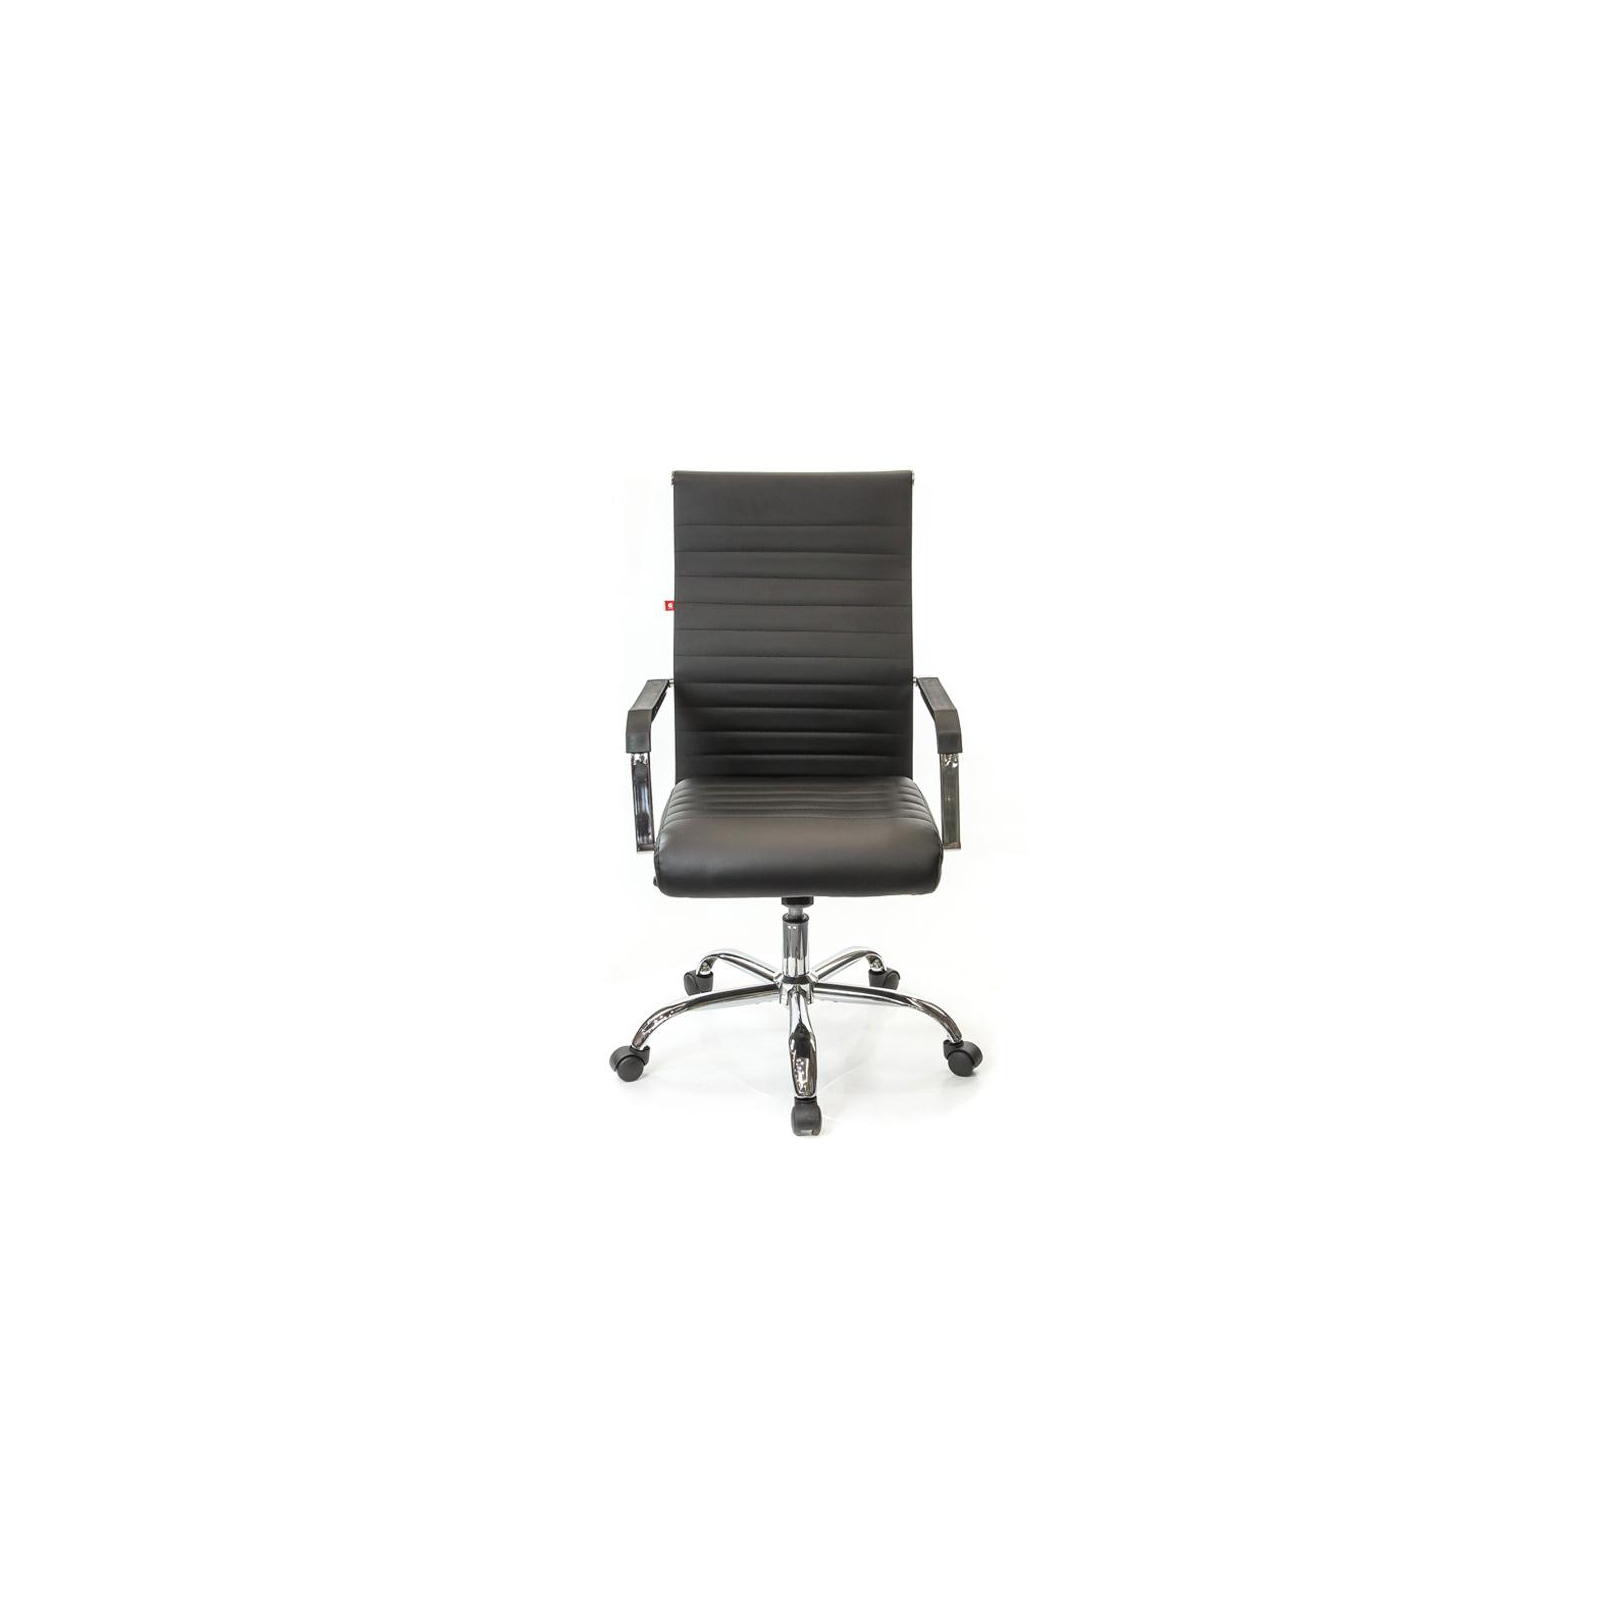 Офісне крісло Аклас Кап FX СН TILT Оранжевое (09905) зображення 2